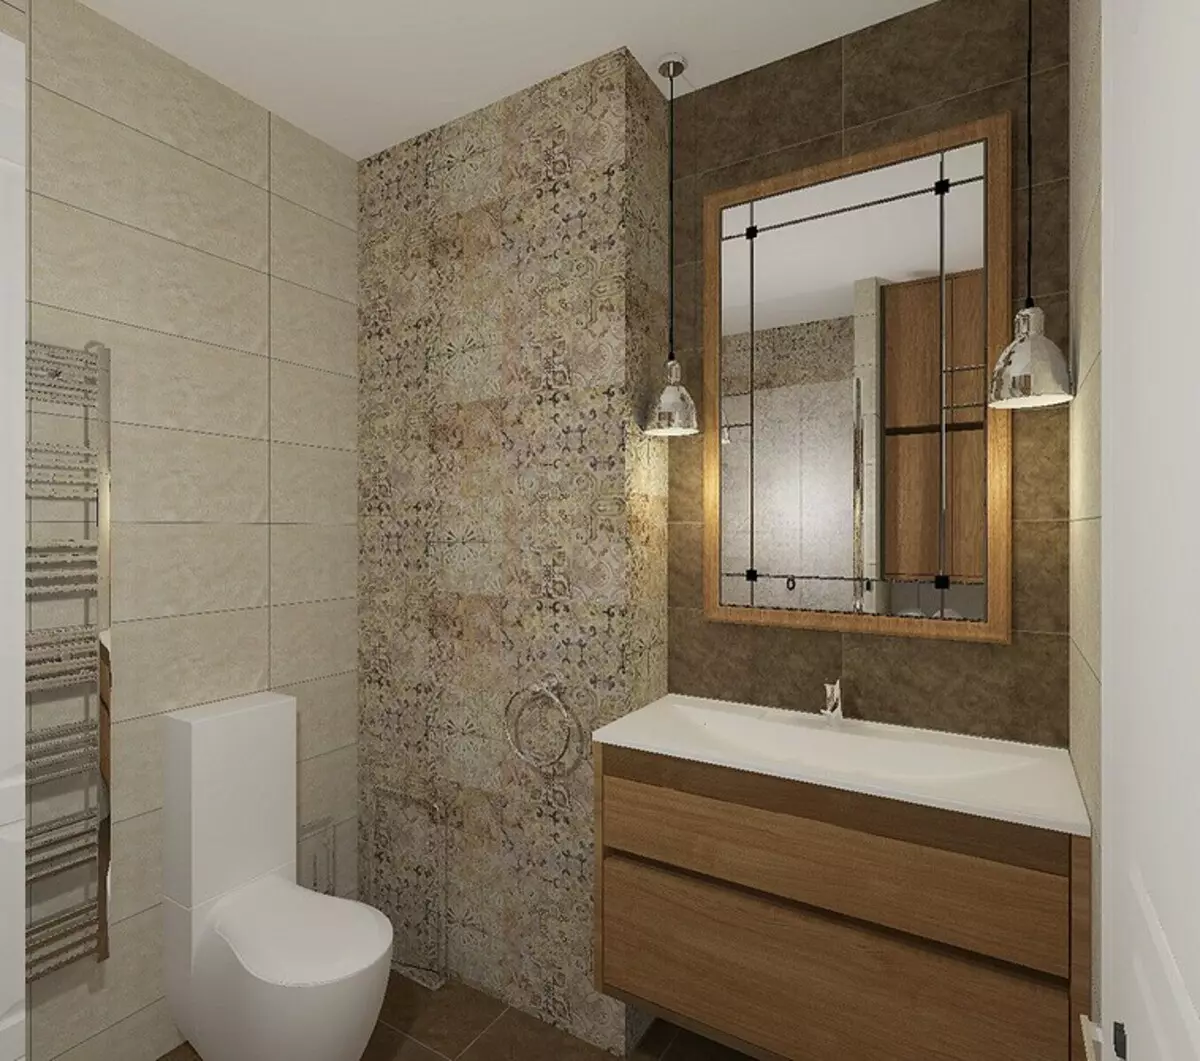 Thiết kế phòng tắm kết hợp với nhà vệ sinh: Mẹo đăng ký và hơn 70 tùy chọn thành công 9974_146